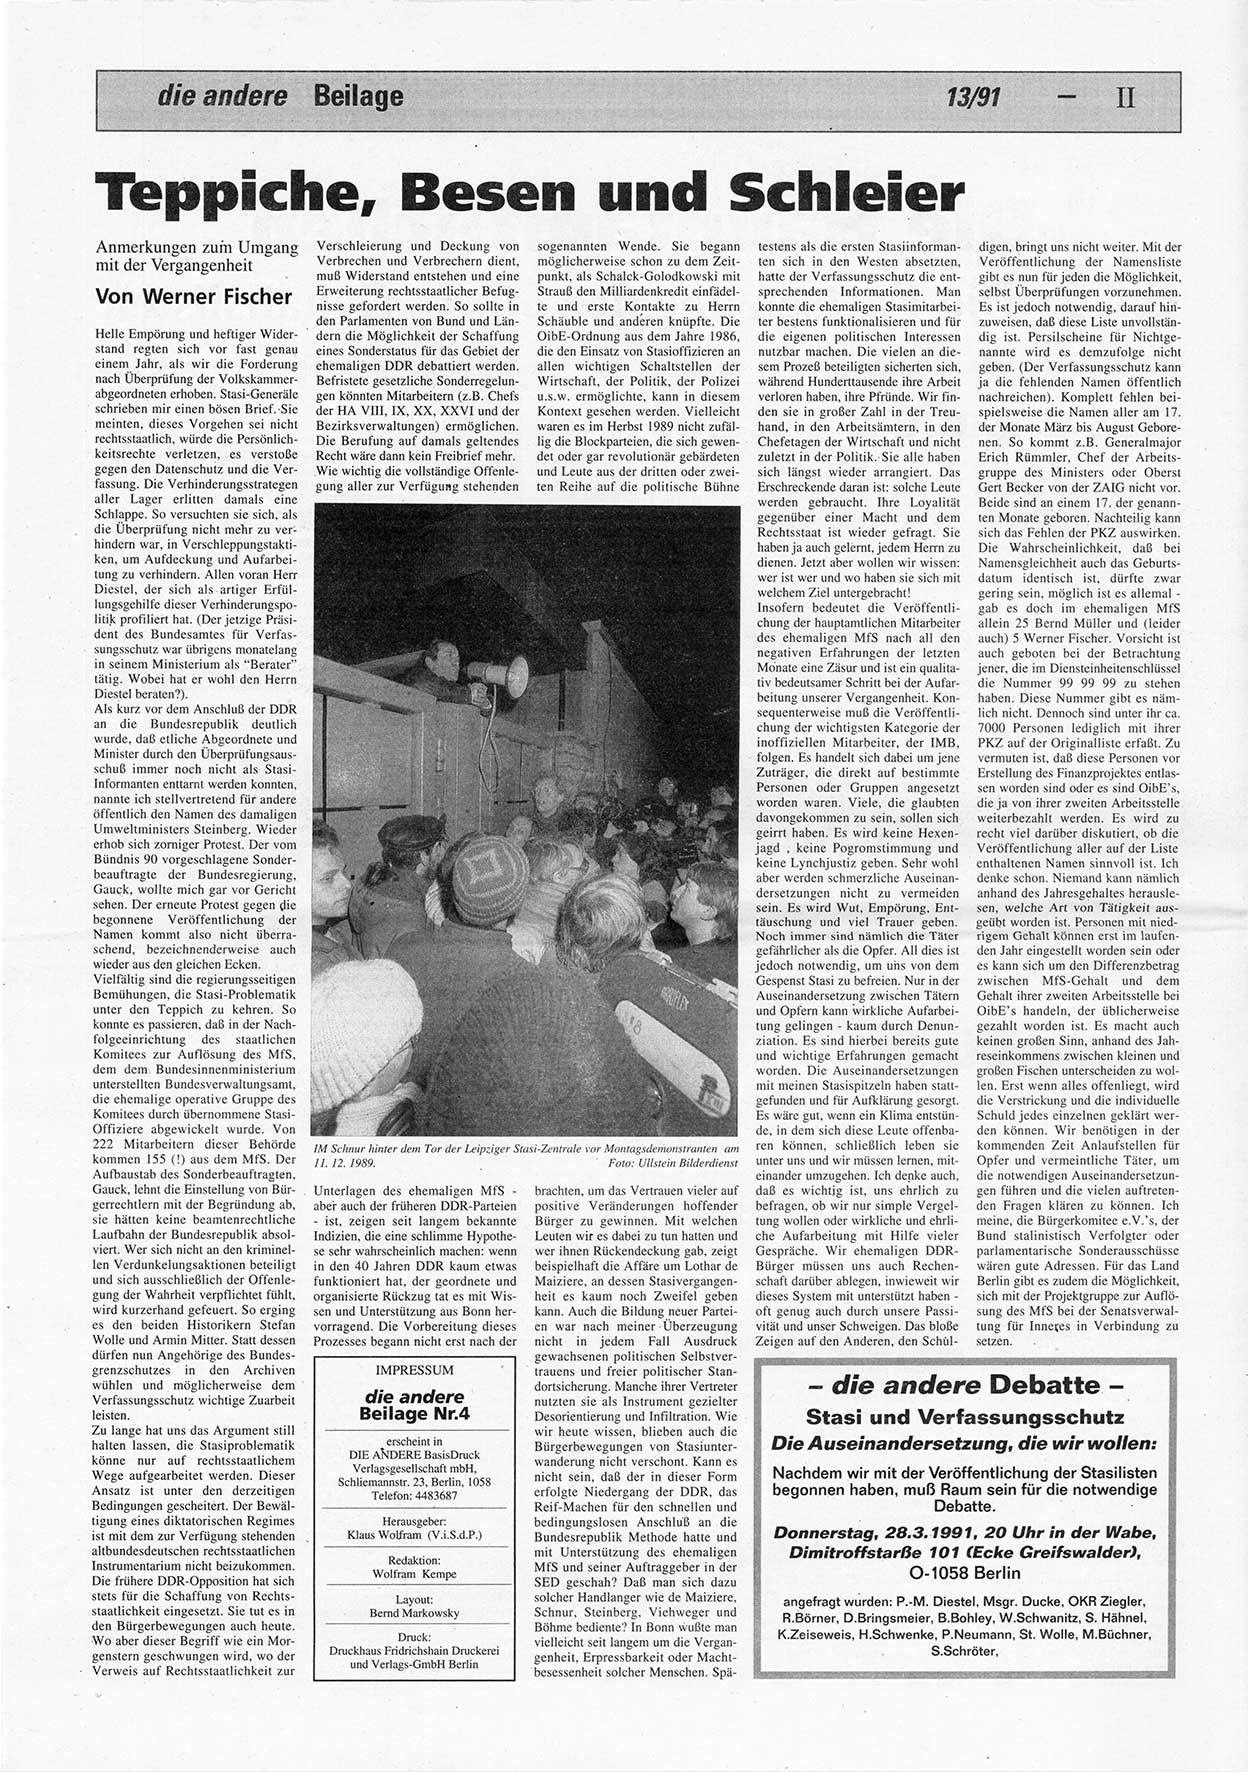 Die Andere, Unabhängige Wochenzeitung für Politik, Kultur und Kunst, Ausgabe 13 vom 27.3.1991, Beilage 4, Seite 2 (And. W.-Zg. Ausg. 13 1991, Beil. S. 2)